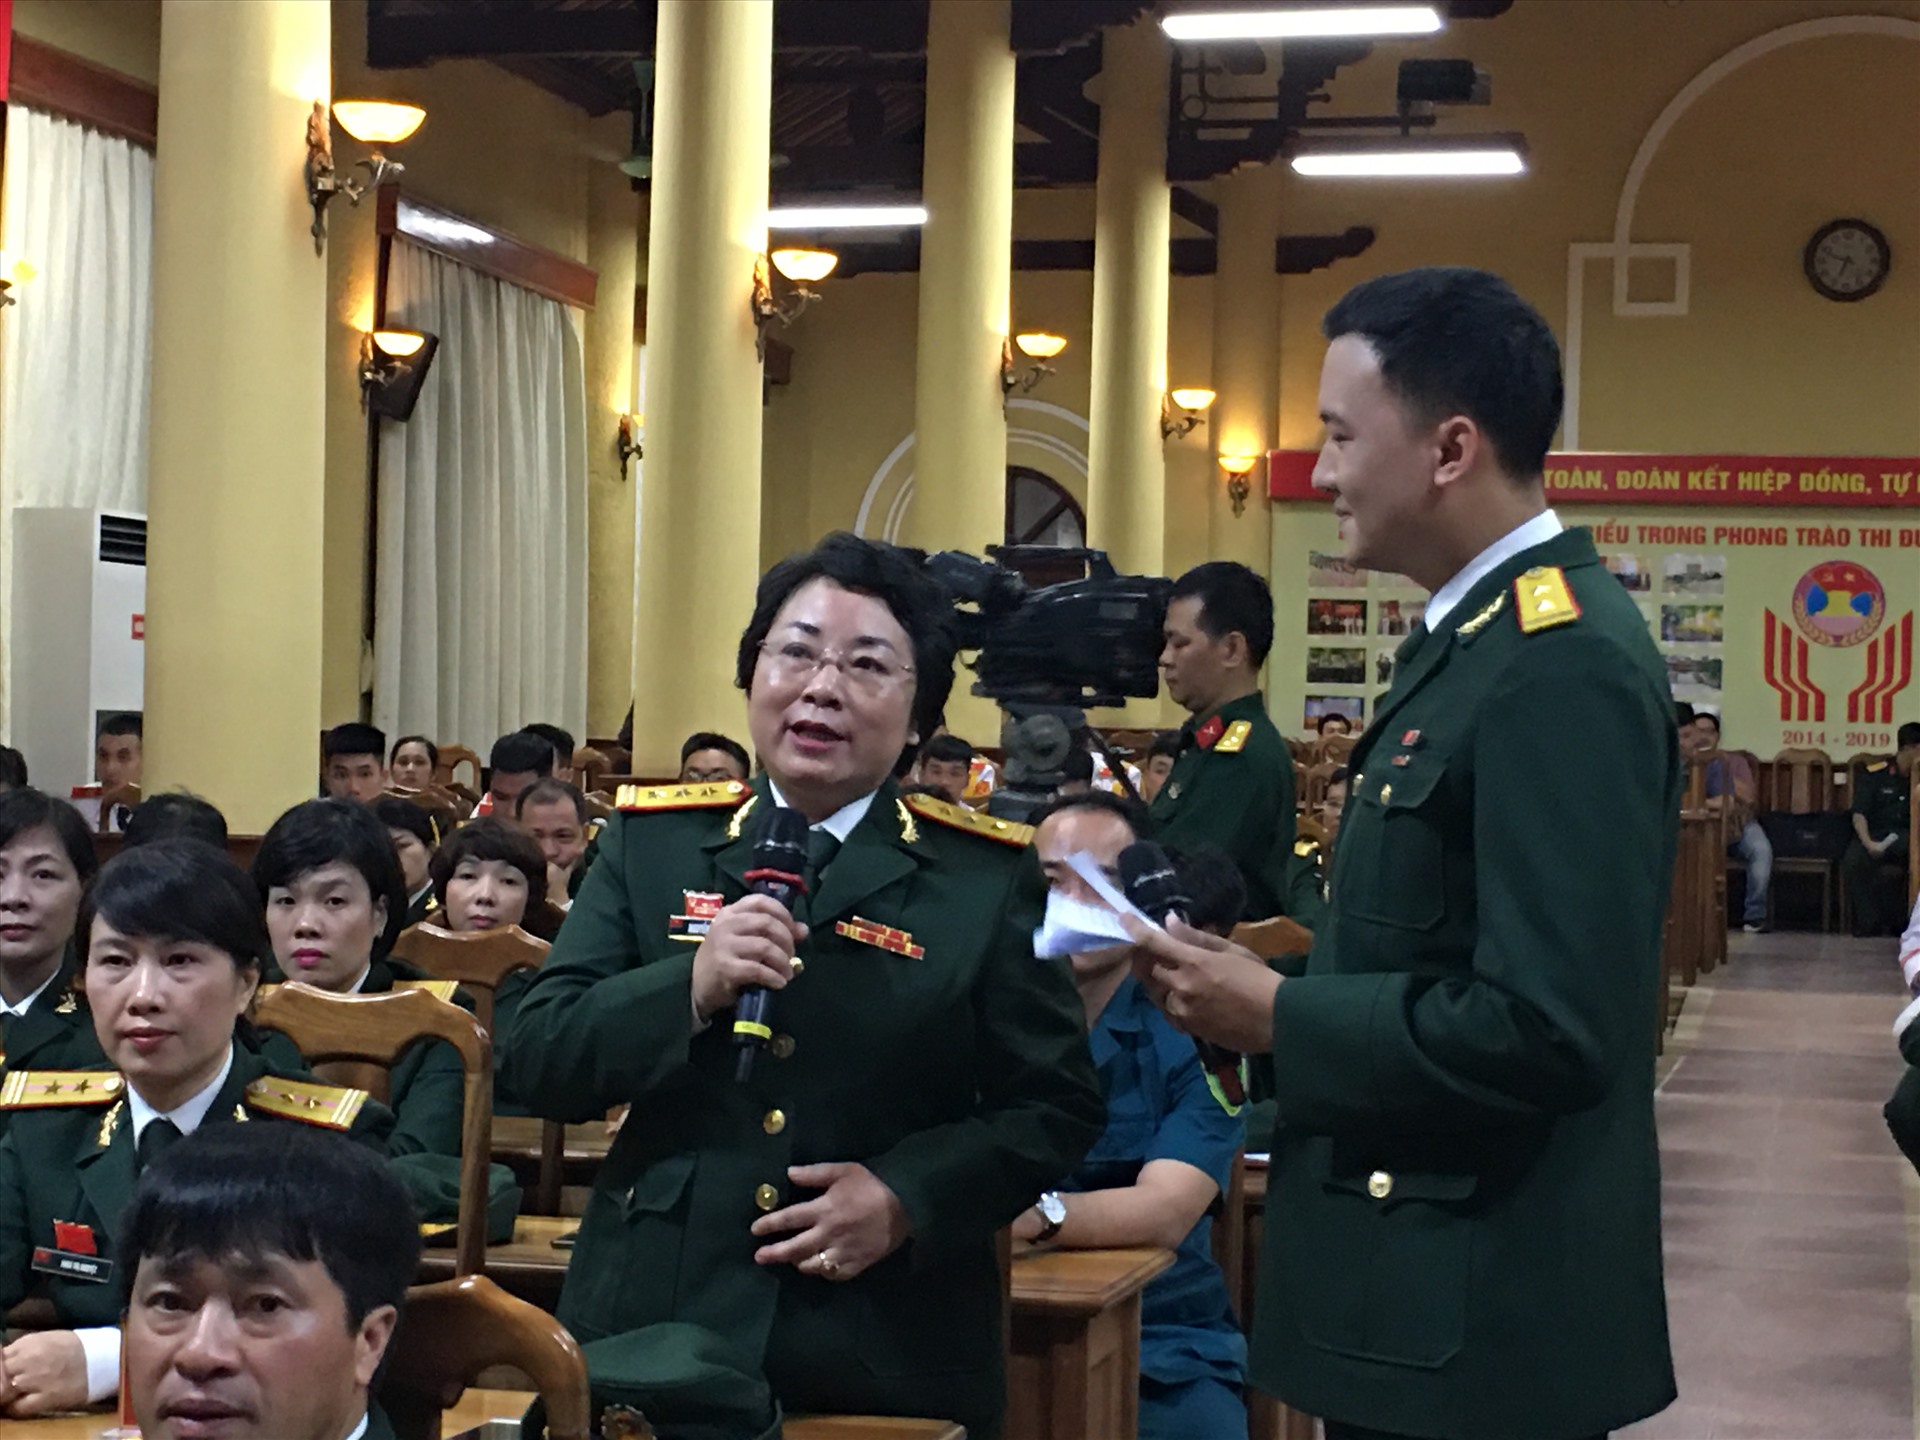 Thượng tá Nguyễn Thị Hường (bên trái ảnh) - Chủ nhiệm chính trị, Chủ tịch Công đoàn Nhà máy Z129 (Tổng cục Công nghiệp Quốc phòng), một trong 92 điểm hình tiến tiến - chia sẻ kinh nghiệm tại buổi gặp mặt. Ảnh: Thu Trà